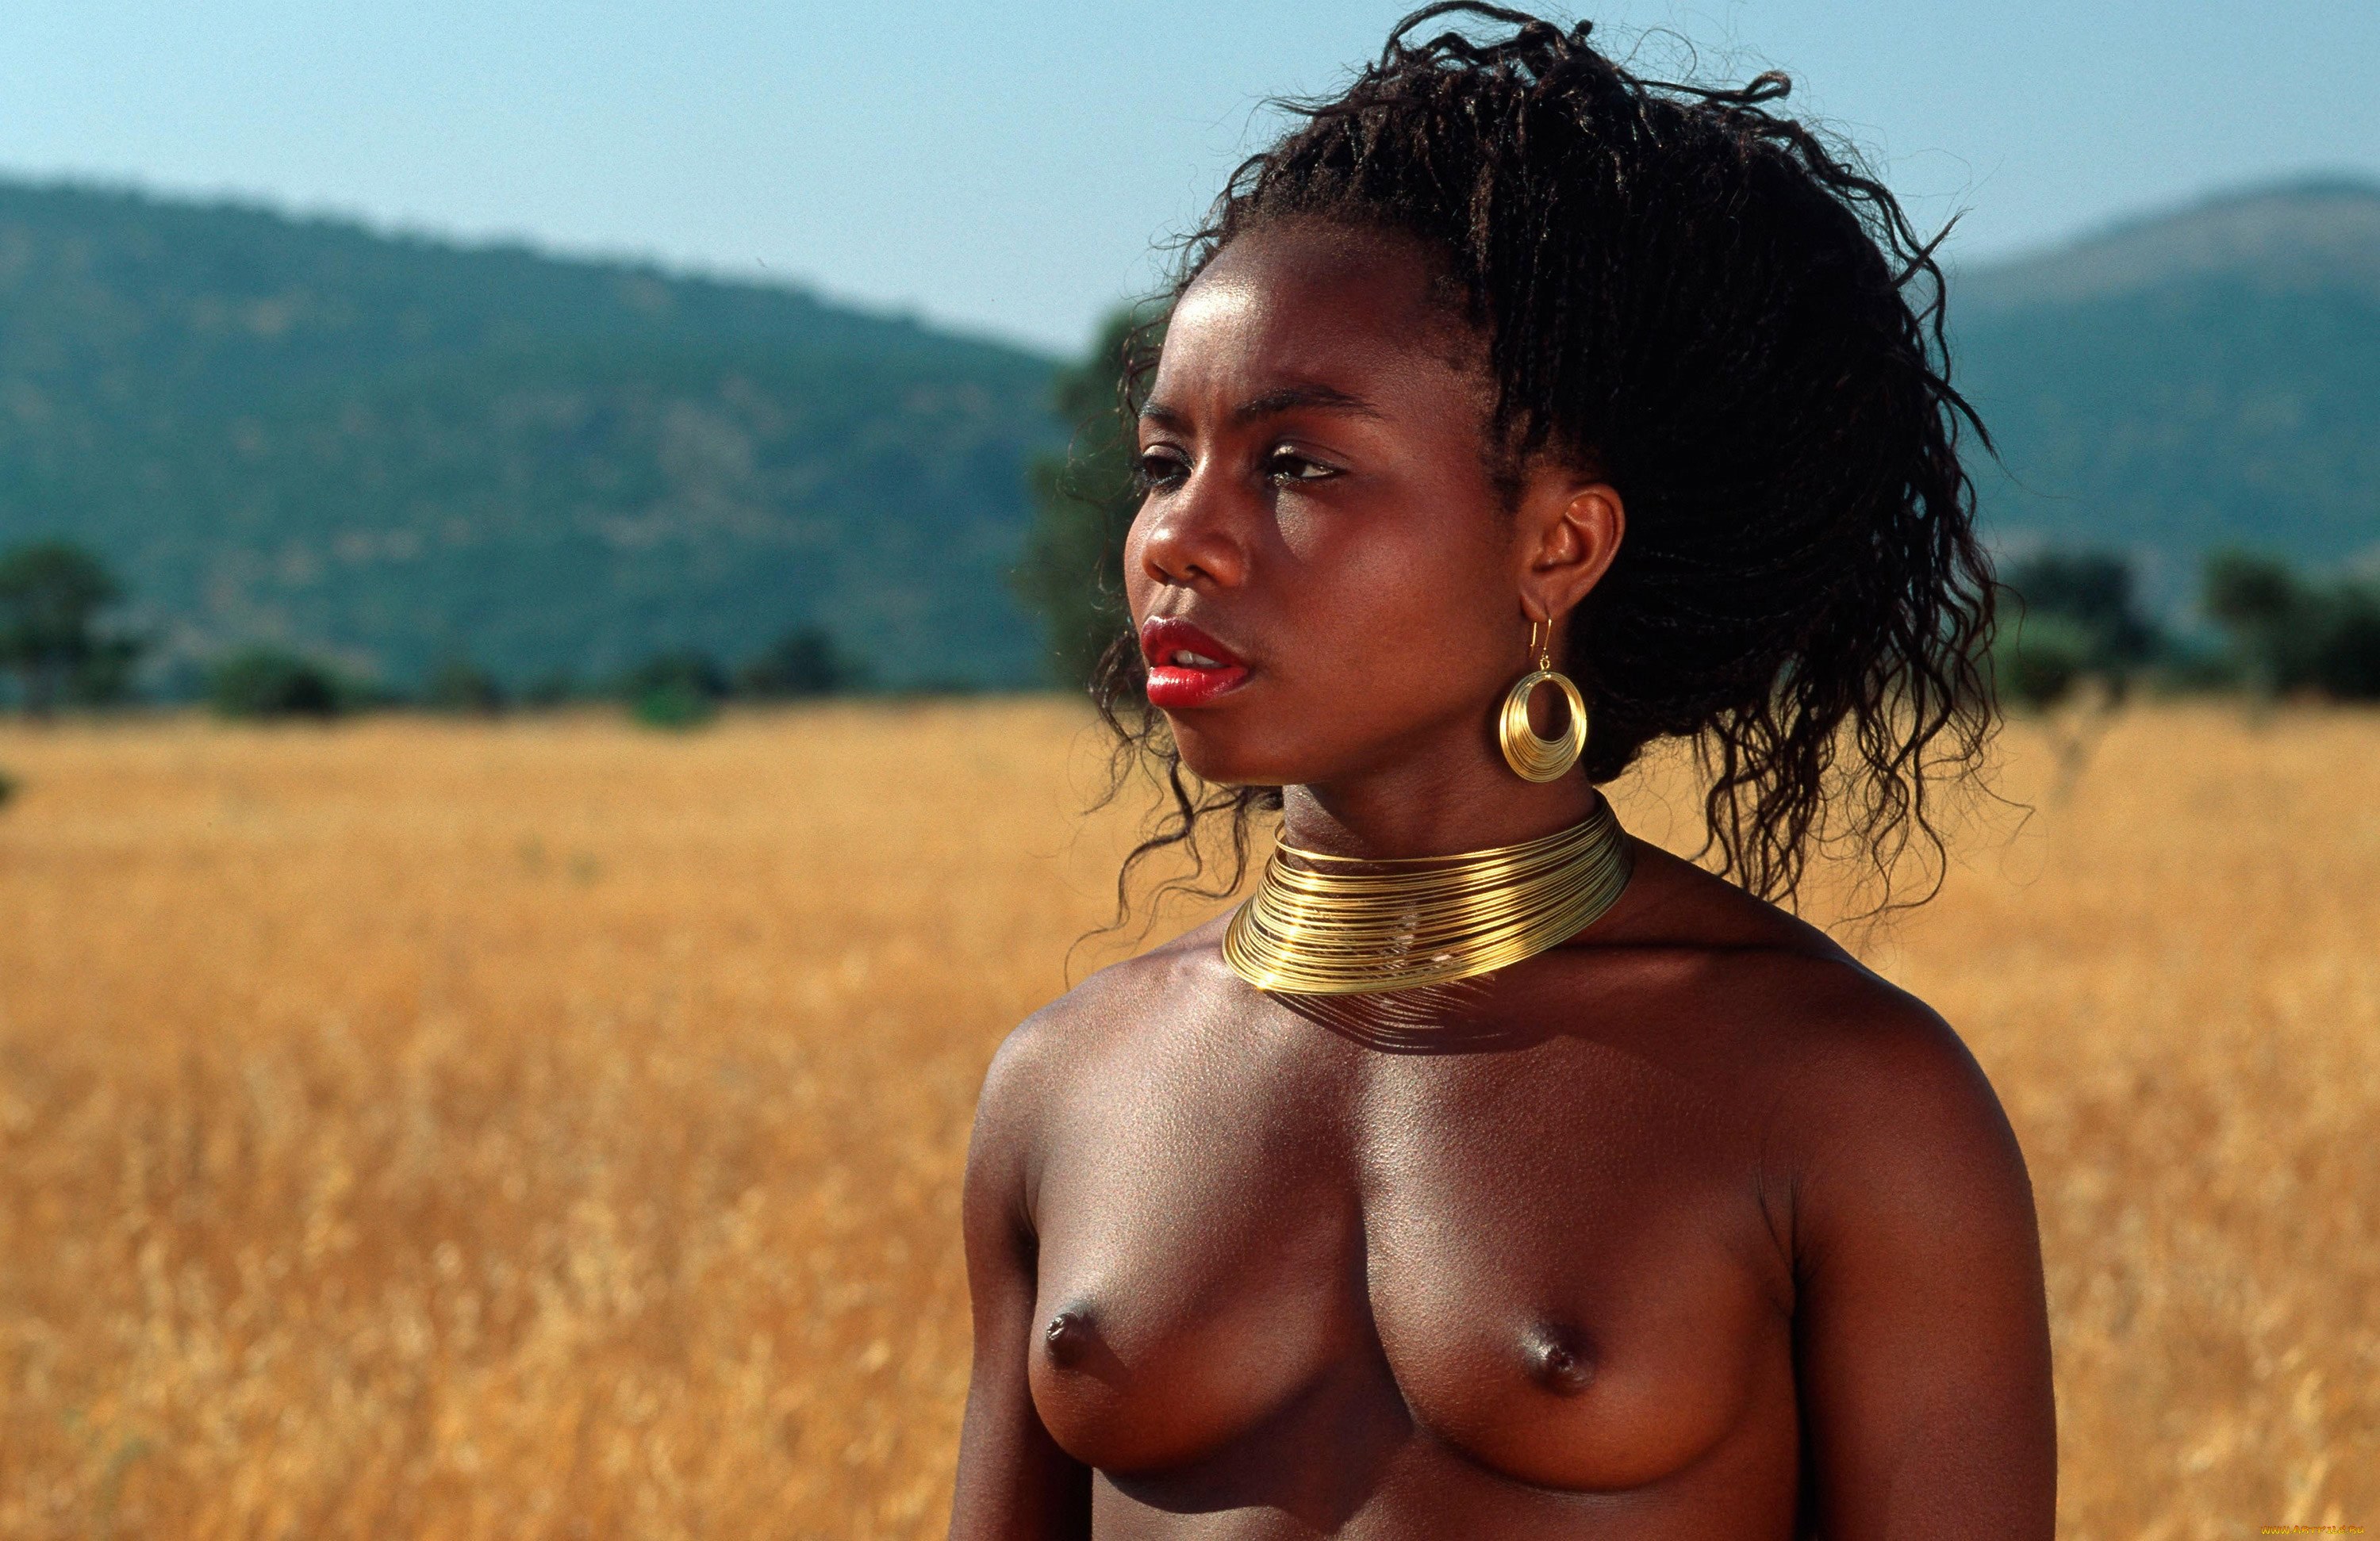 Фото дикой голой африканки - смотреть бесплатно обнаженные фотографии девушки